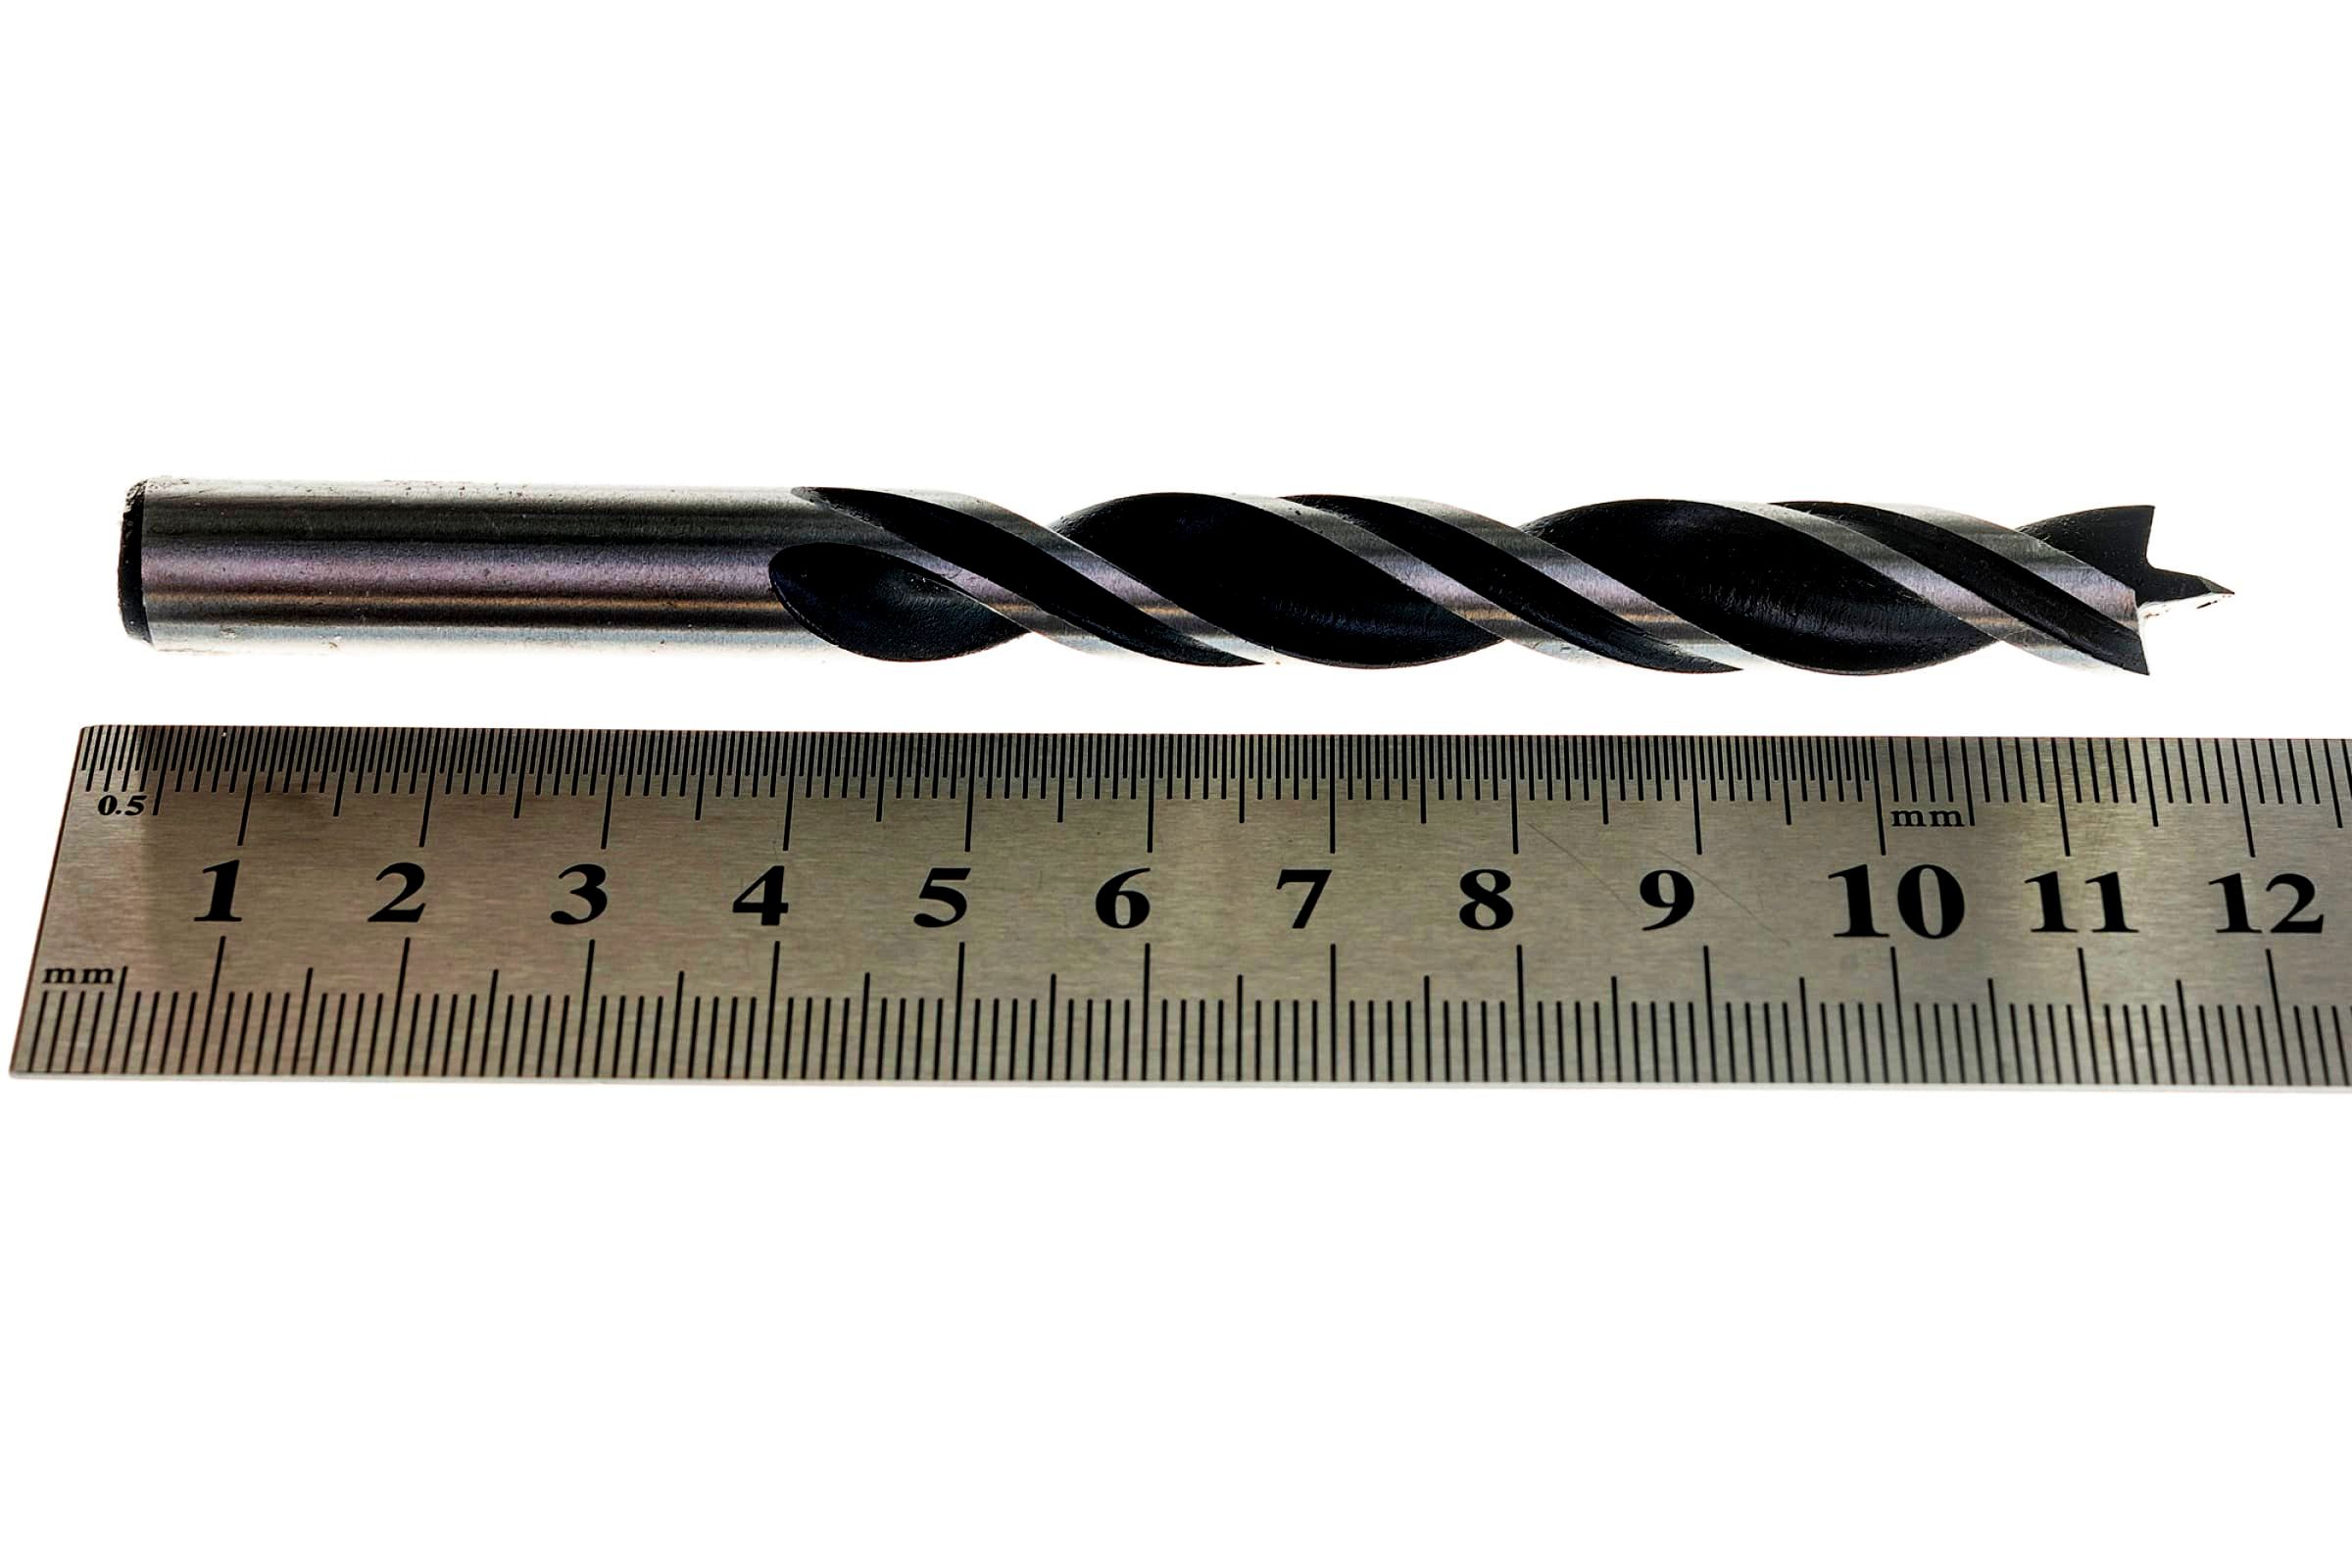 Набор спиральных сверл по дереву 3-10 мм, 8 шт Robust Line Bosch 2607010533, М-образная заточка - фото